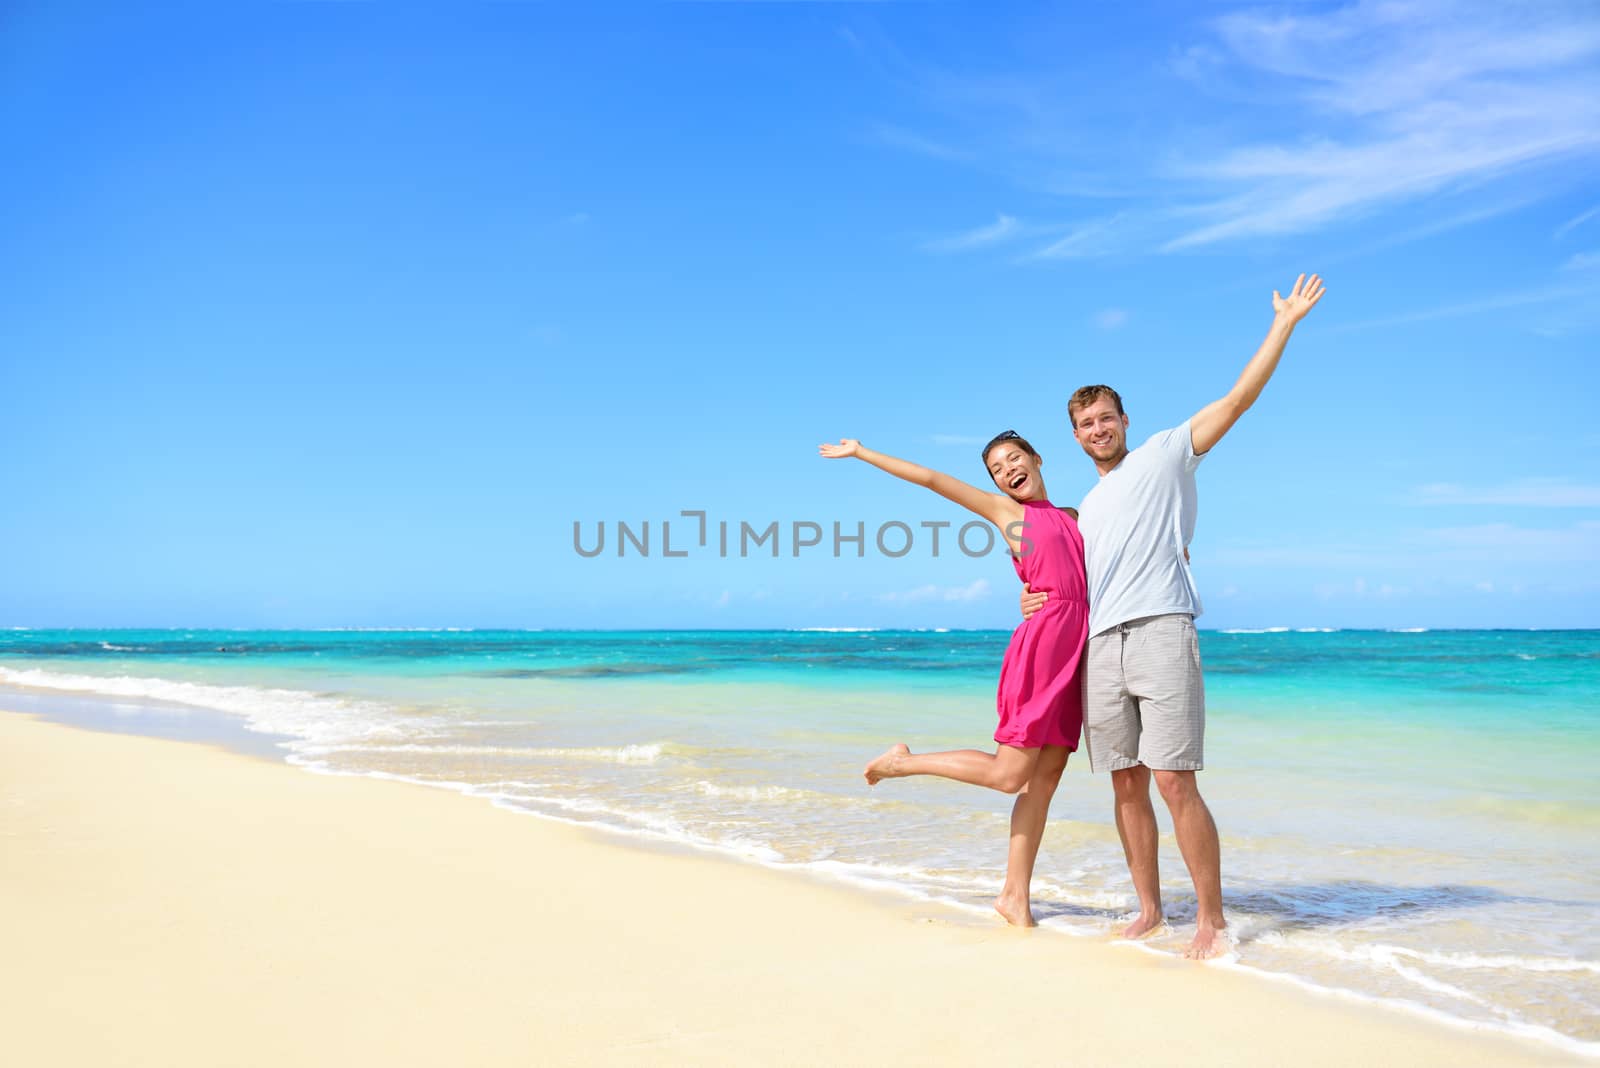 Freedom on beach vacation - happy carefree couple by Maridav